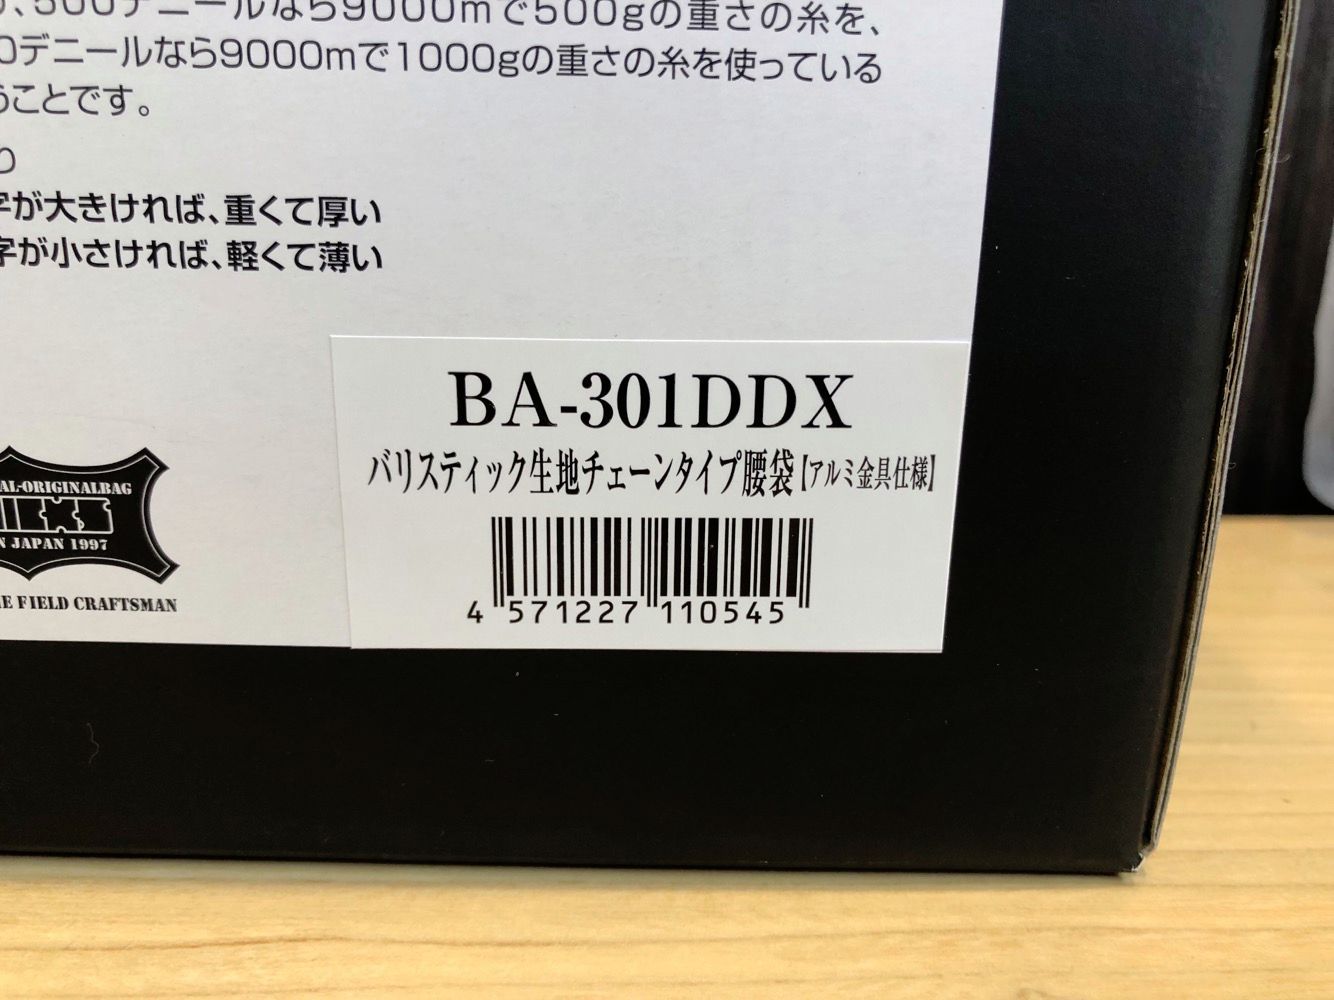 ニックス バリスティック生地チェーンタイプ腰袋 アルミ金具仕様 ブラック BA-301DDX KNICKS BA301DDX - 2